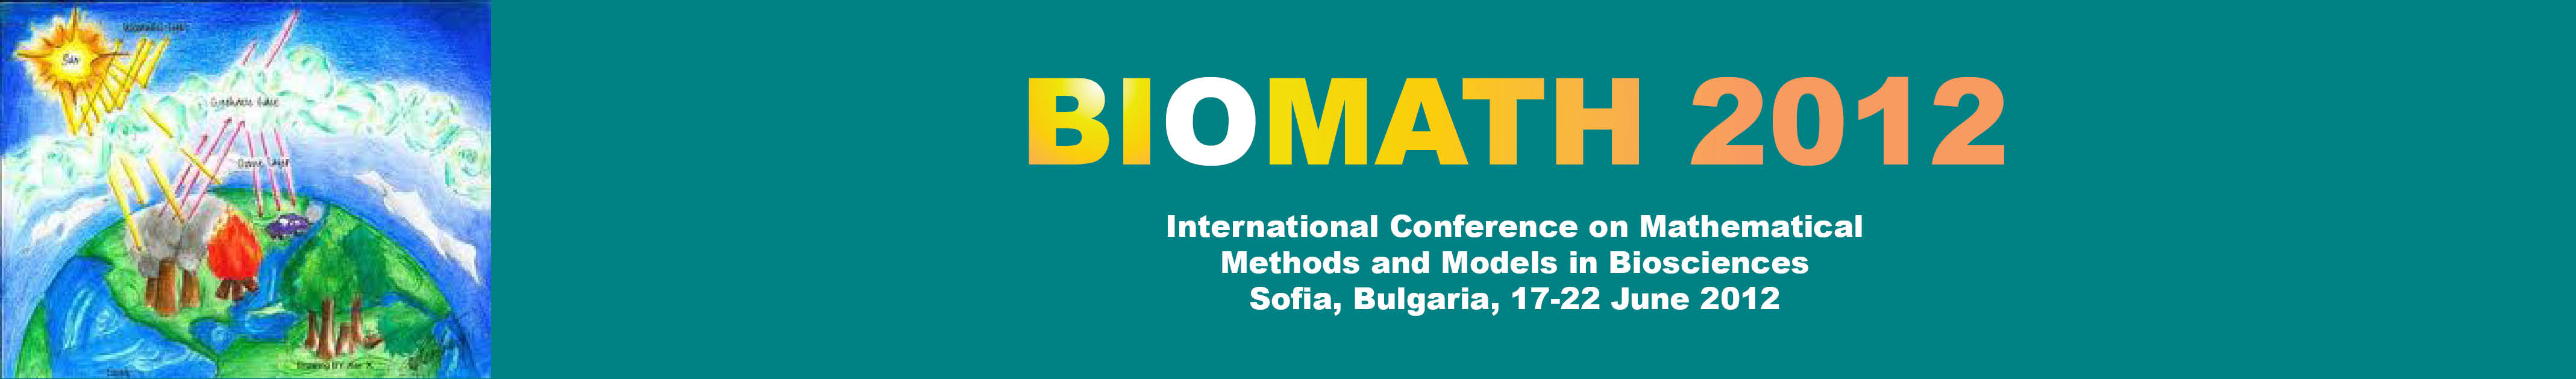 BIOMATH 2012 Logo